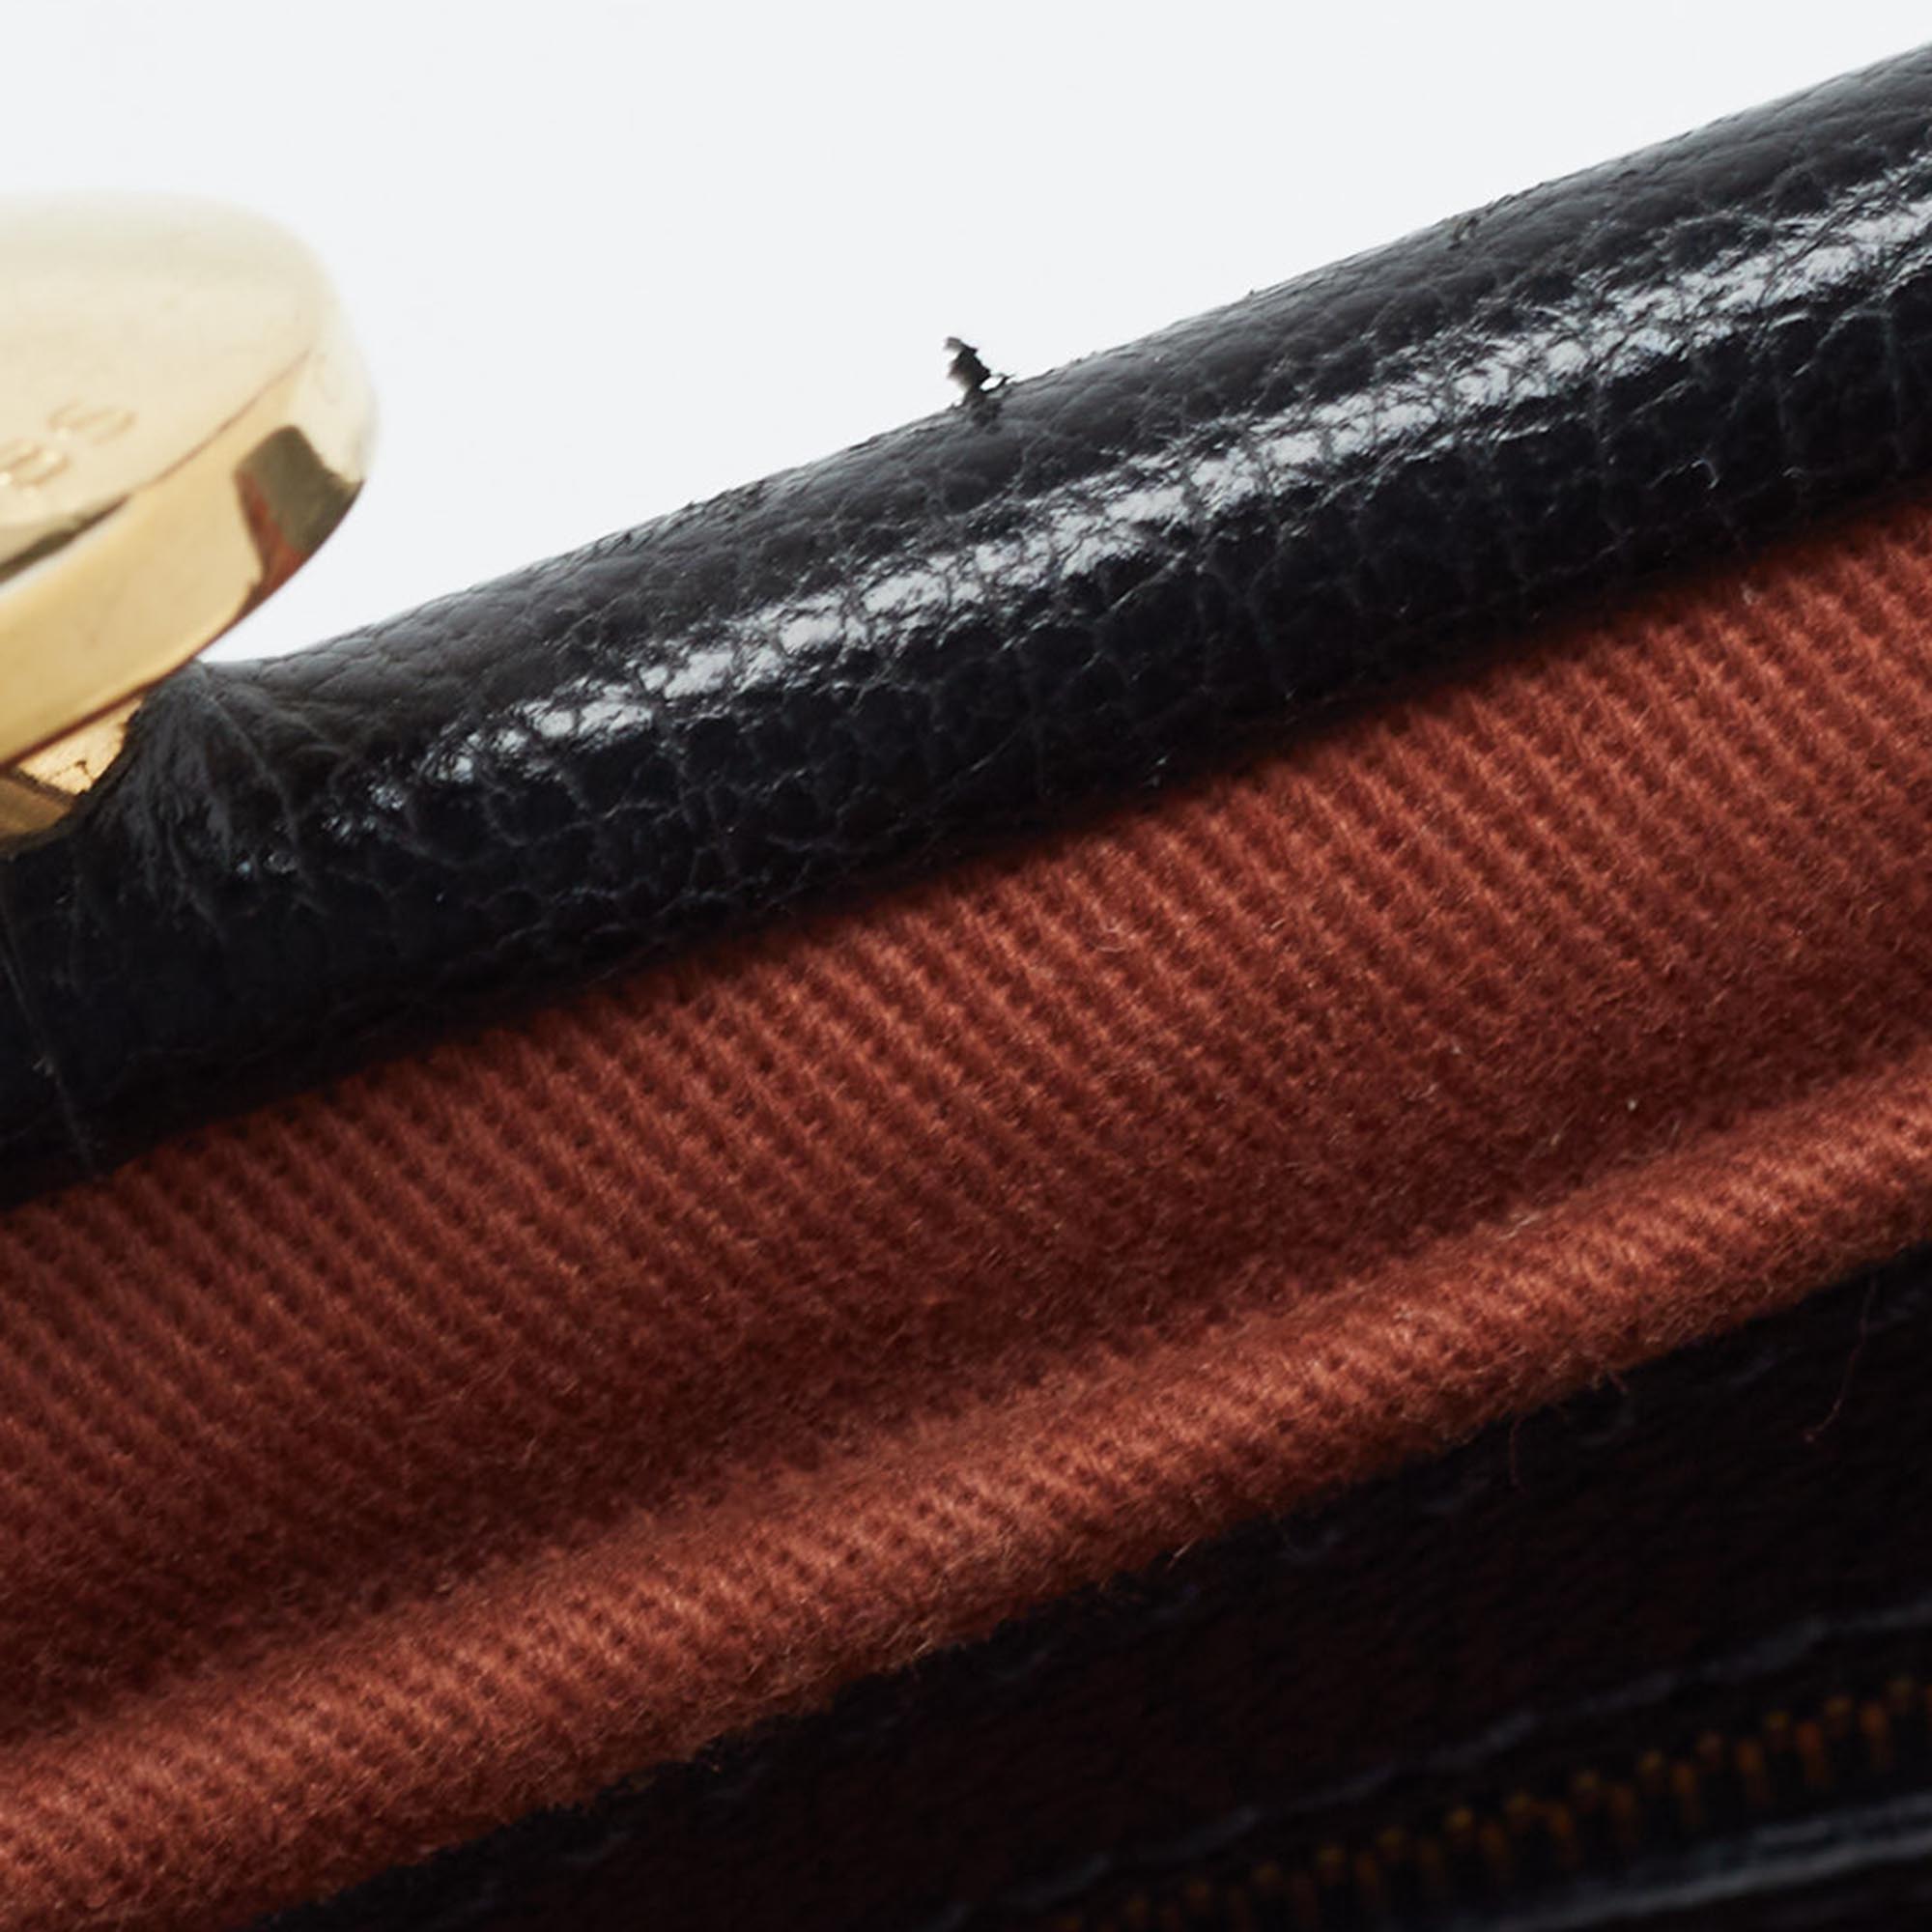 Marc Jacobs Black Quilted Leather Little Stam Shoulder Bag